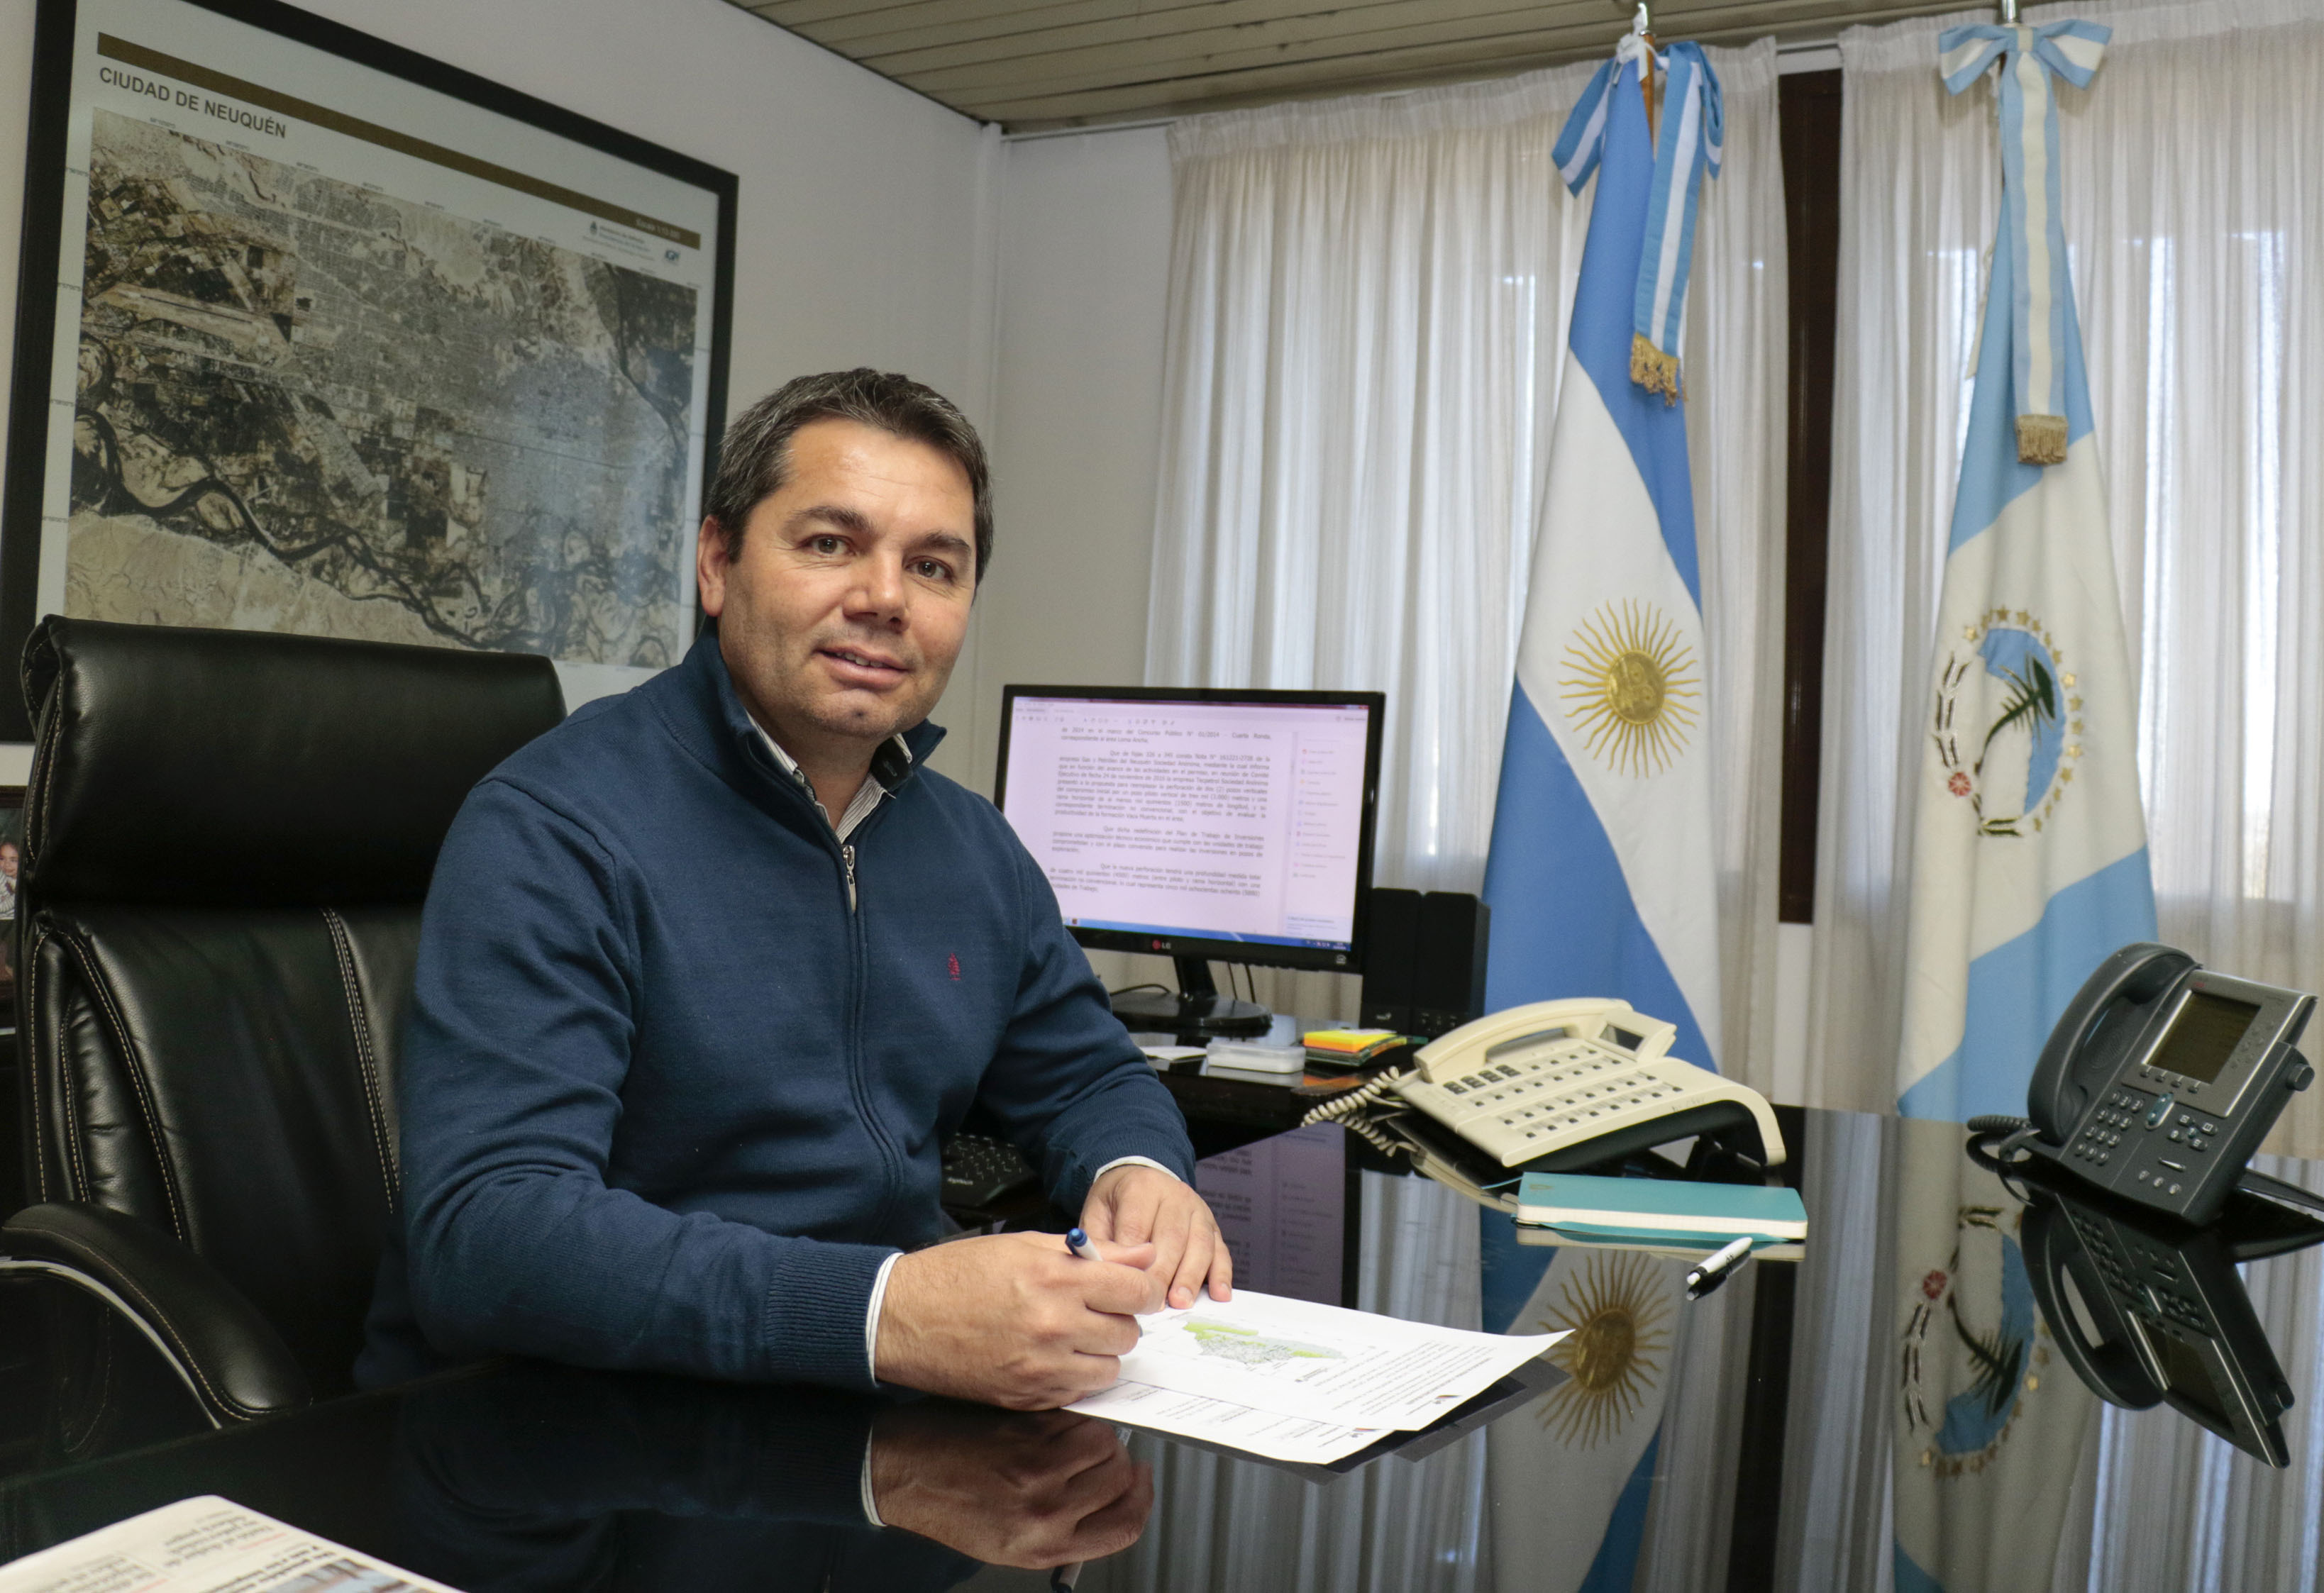 Argentina’s Neuquén Province Energy Minster Alejandro Rodrigo Monteiro